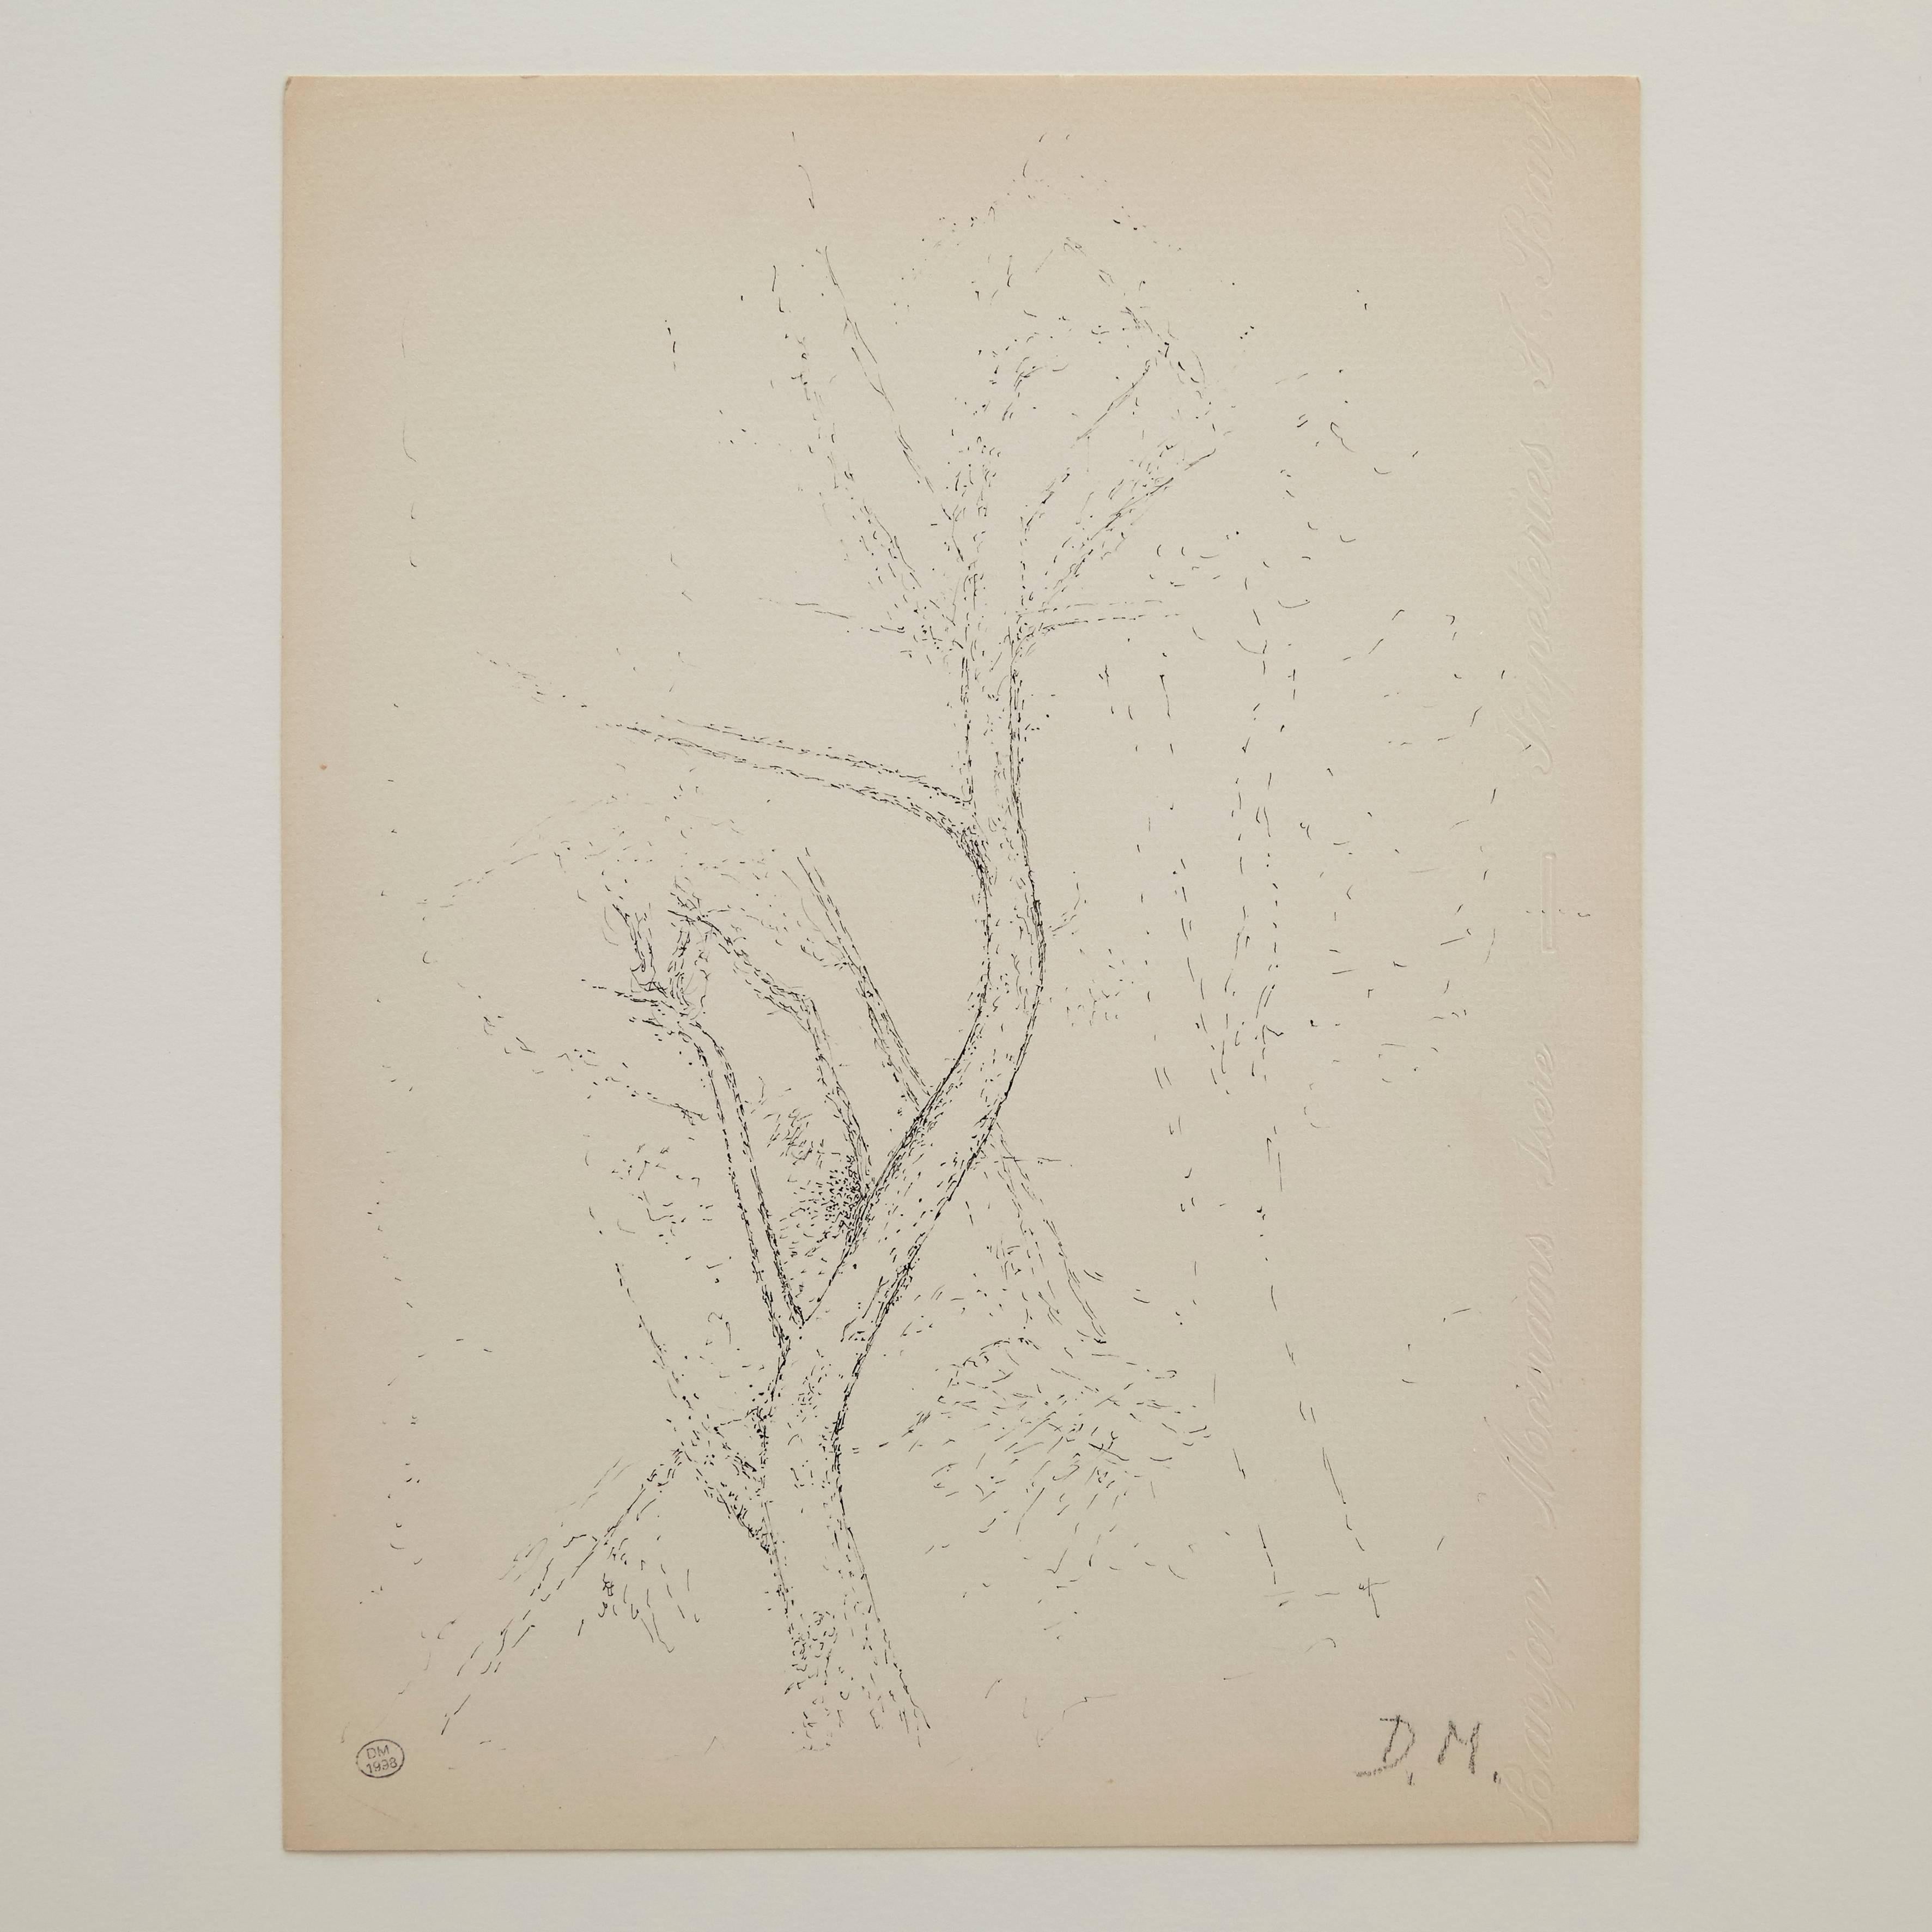 Pointillistische Komposition von Dora Maar.

Echtheitsstempel der Auktion, die 1998 in Paris stattfand.
Schwarze Tinte auf cremeweißem Papier.
20. Jahrhundert, undatiert.
Rahmen nicht enthalten.

In gutem Originalzustand, mit geringen alters-